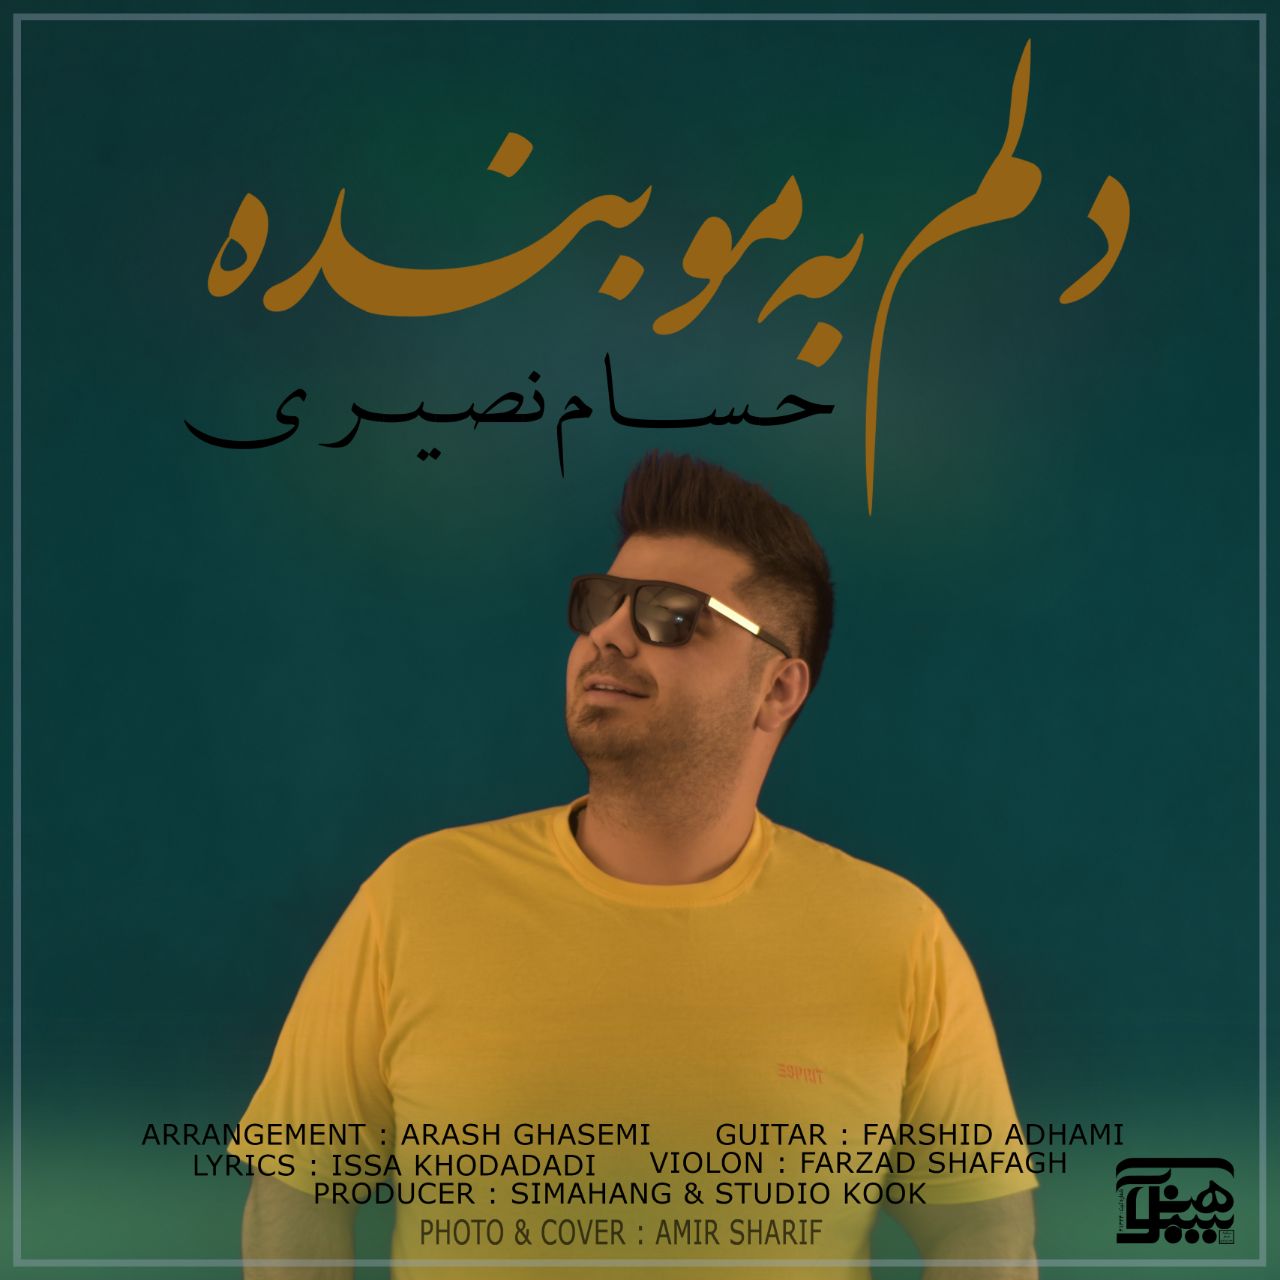  دانلود آهنگ جدید حسام نصیری - دلم به مو بنده | Download New Music By Hesam Nasiri - Delam Be Mo Bandeh